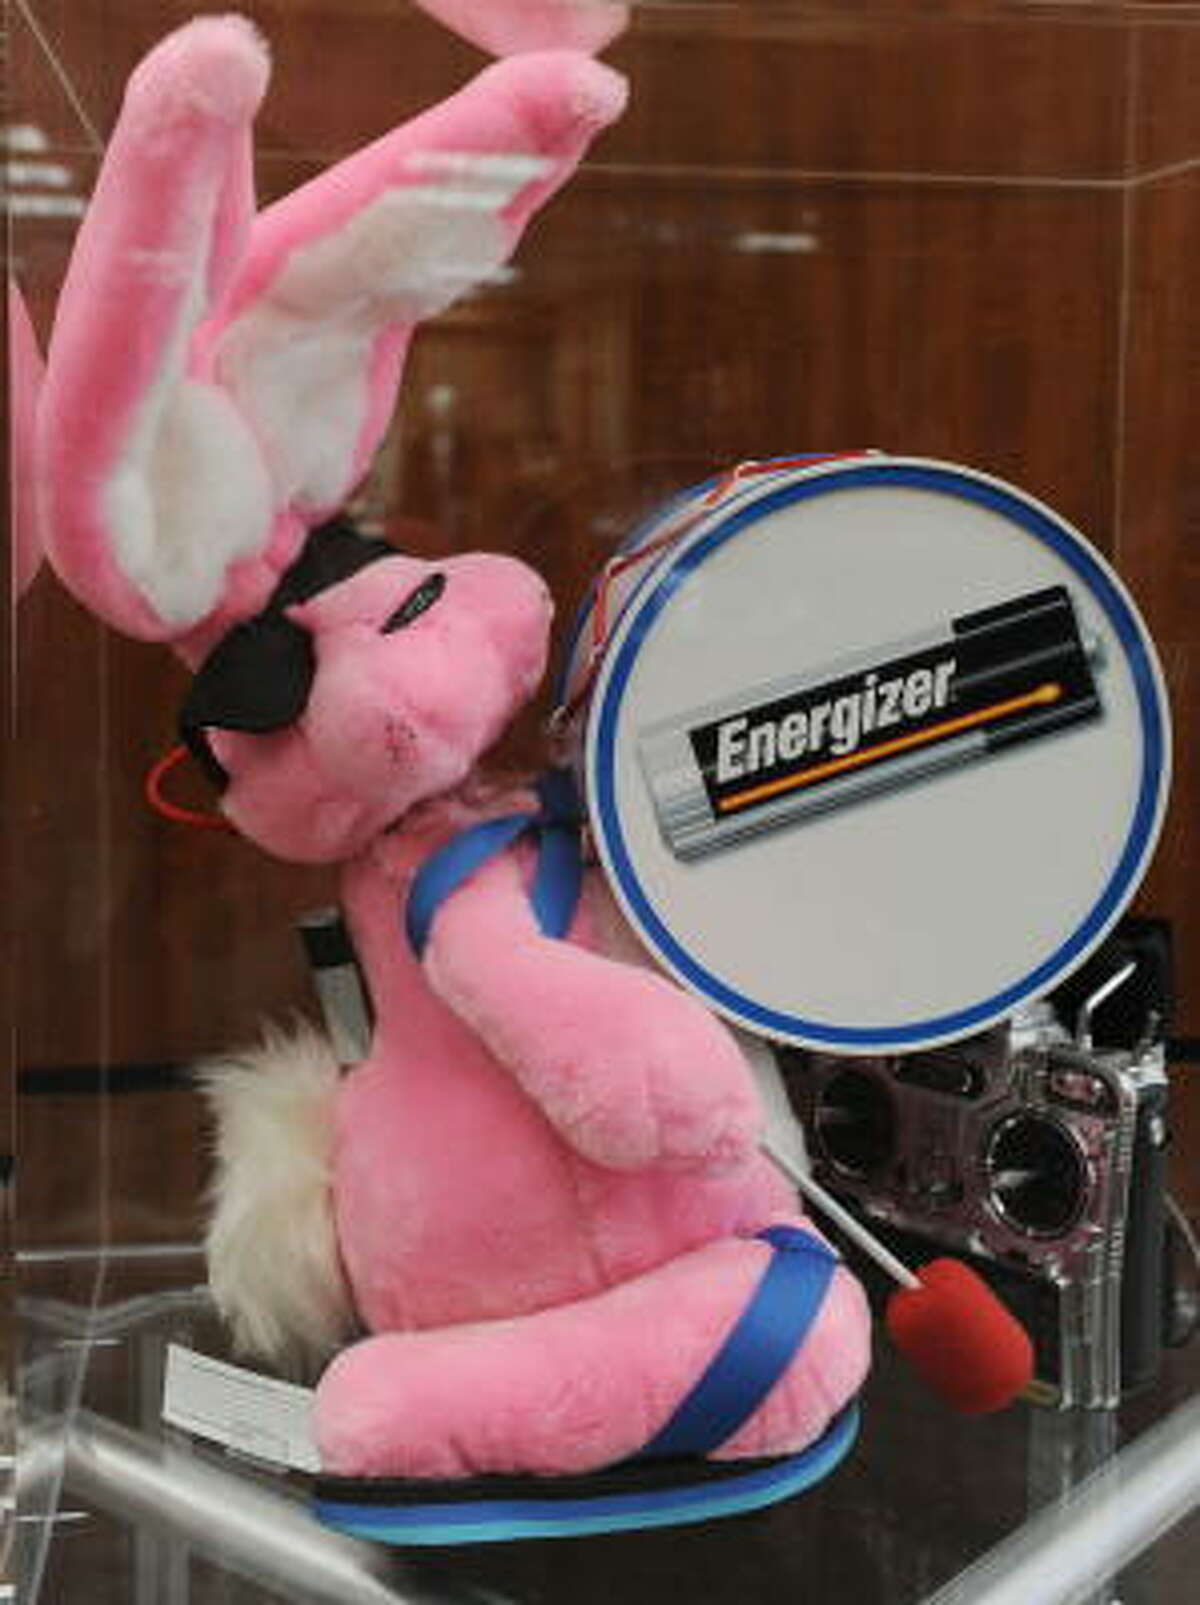 energizer bunny stuffed animal